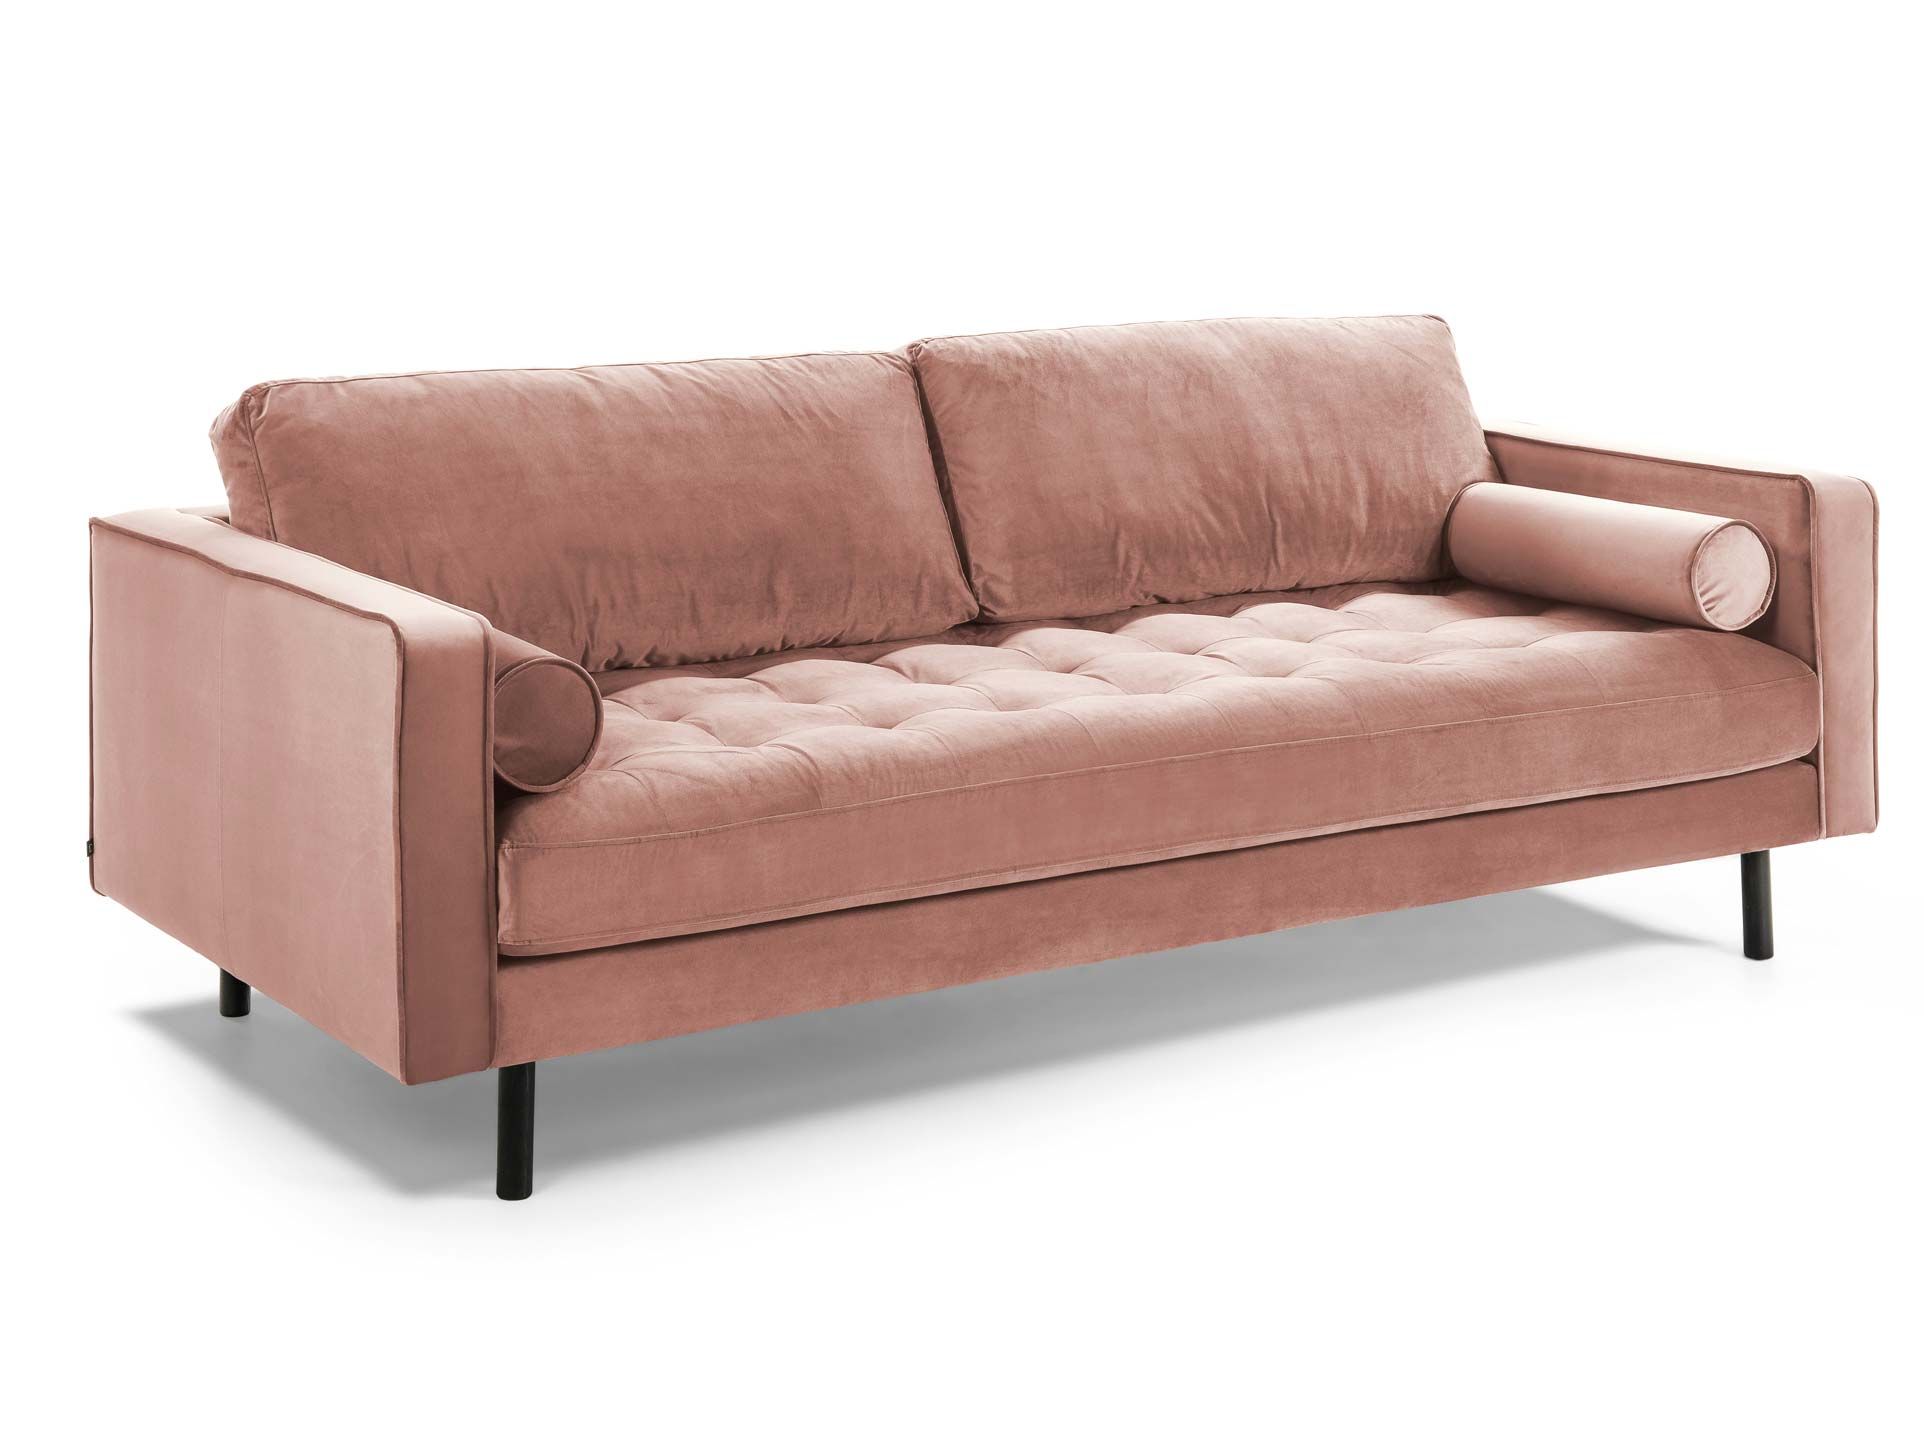 Elige el sofá ideal para tu primera casa - Salones